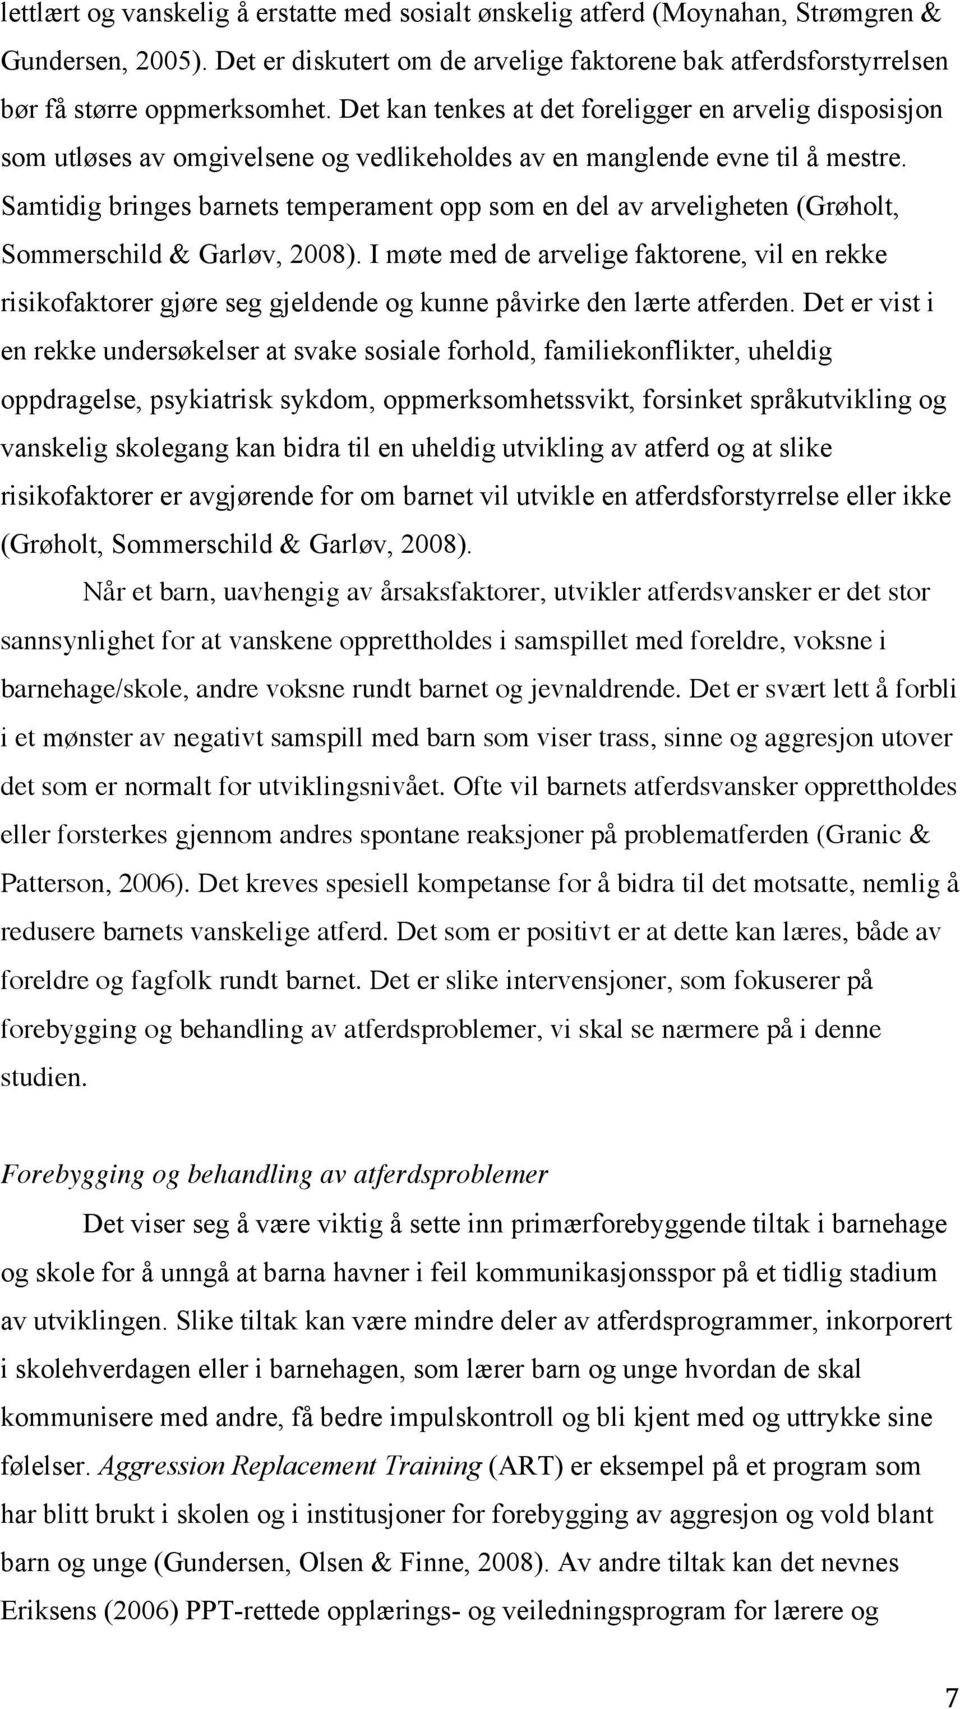 Samtidig bringes barnets temperament opp som en del av arveligheten (Grøholt, Sommerschild & Garløv, 2008).